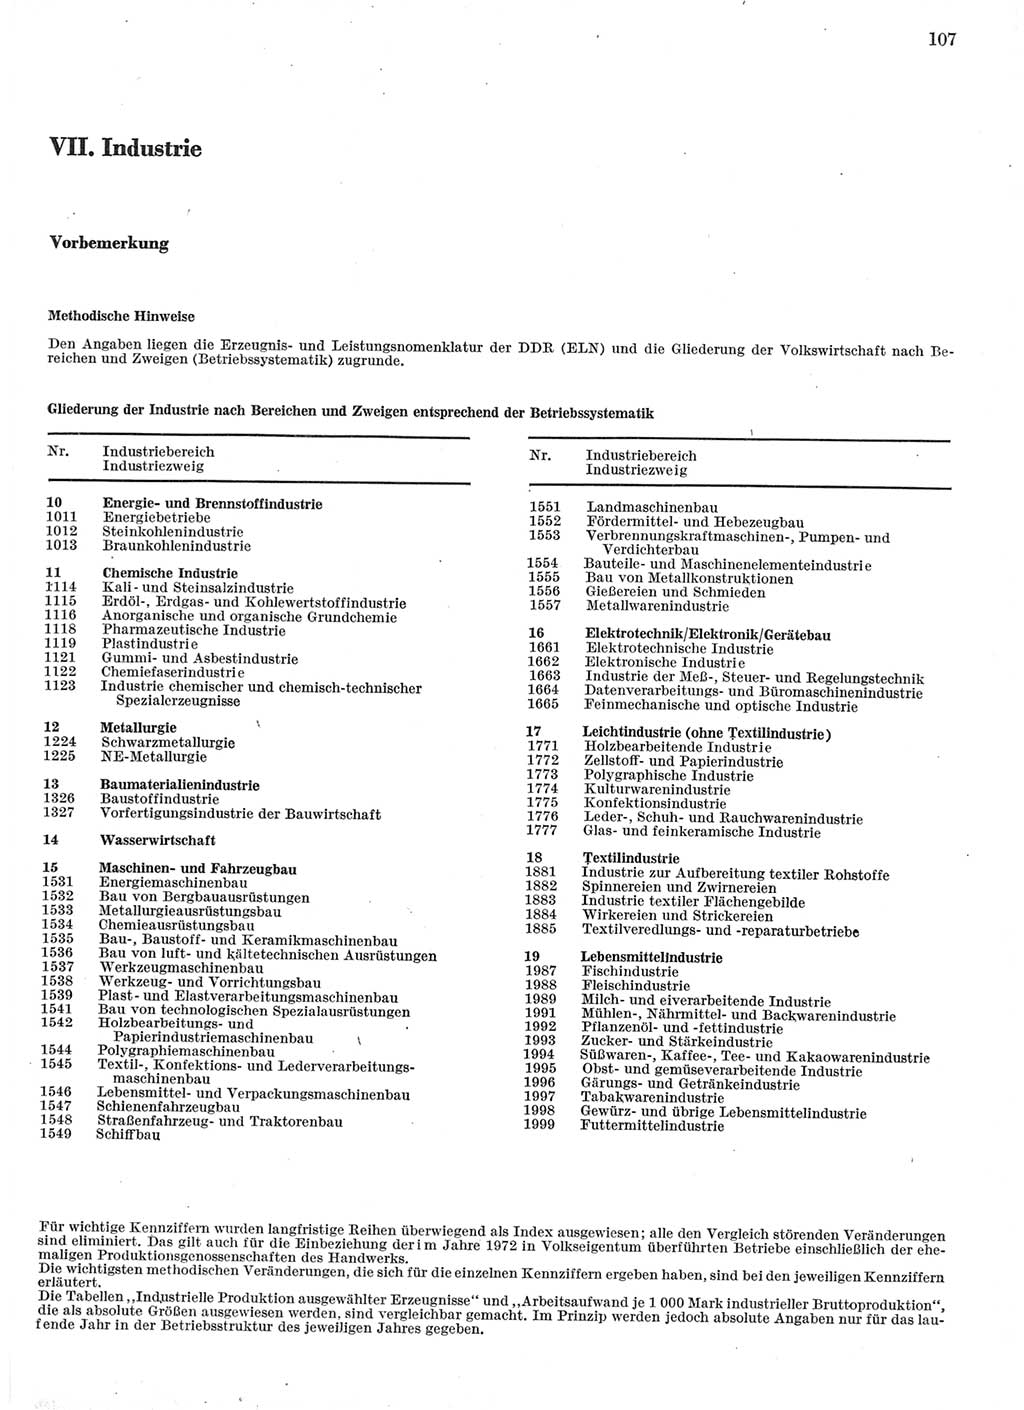 Statistisches Jahrbuch der Deutschen Demokratischen Republik (DDR) 1978, Seite 107 (Stat. Jb. DDR 1978, S. 107)